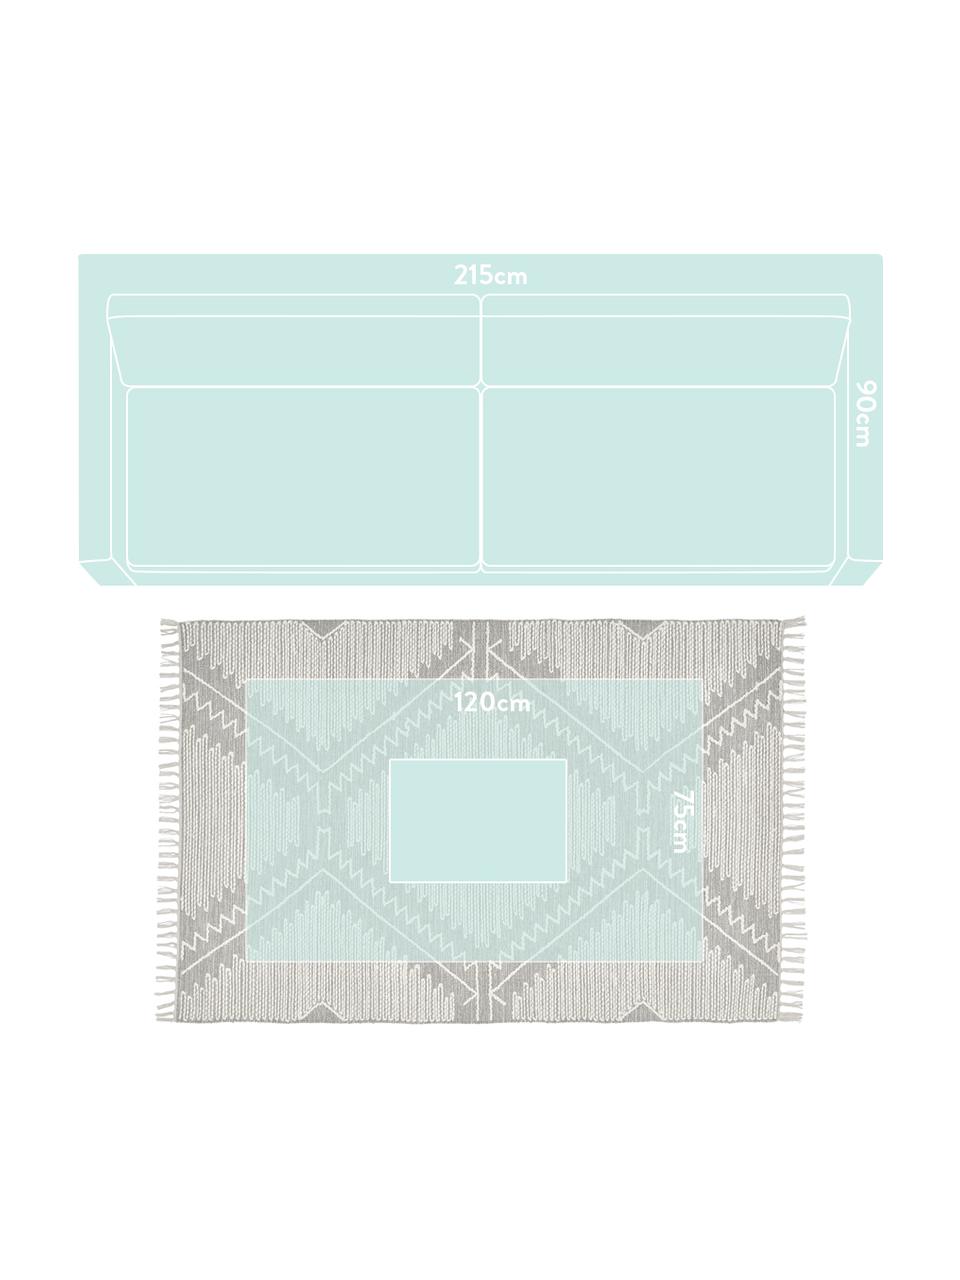 Ręcznie tkany dywan z niskim stosem Karola, Szary, kremowobiały, S 120 x D 180 cm